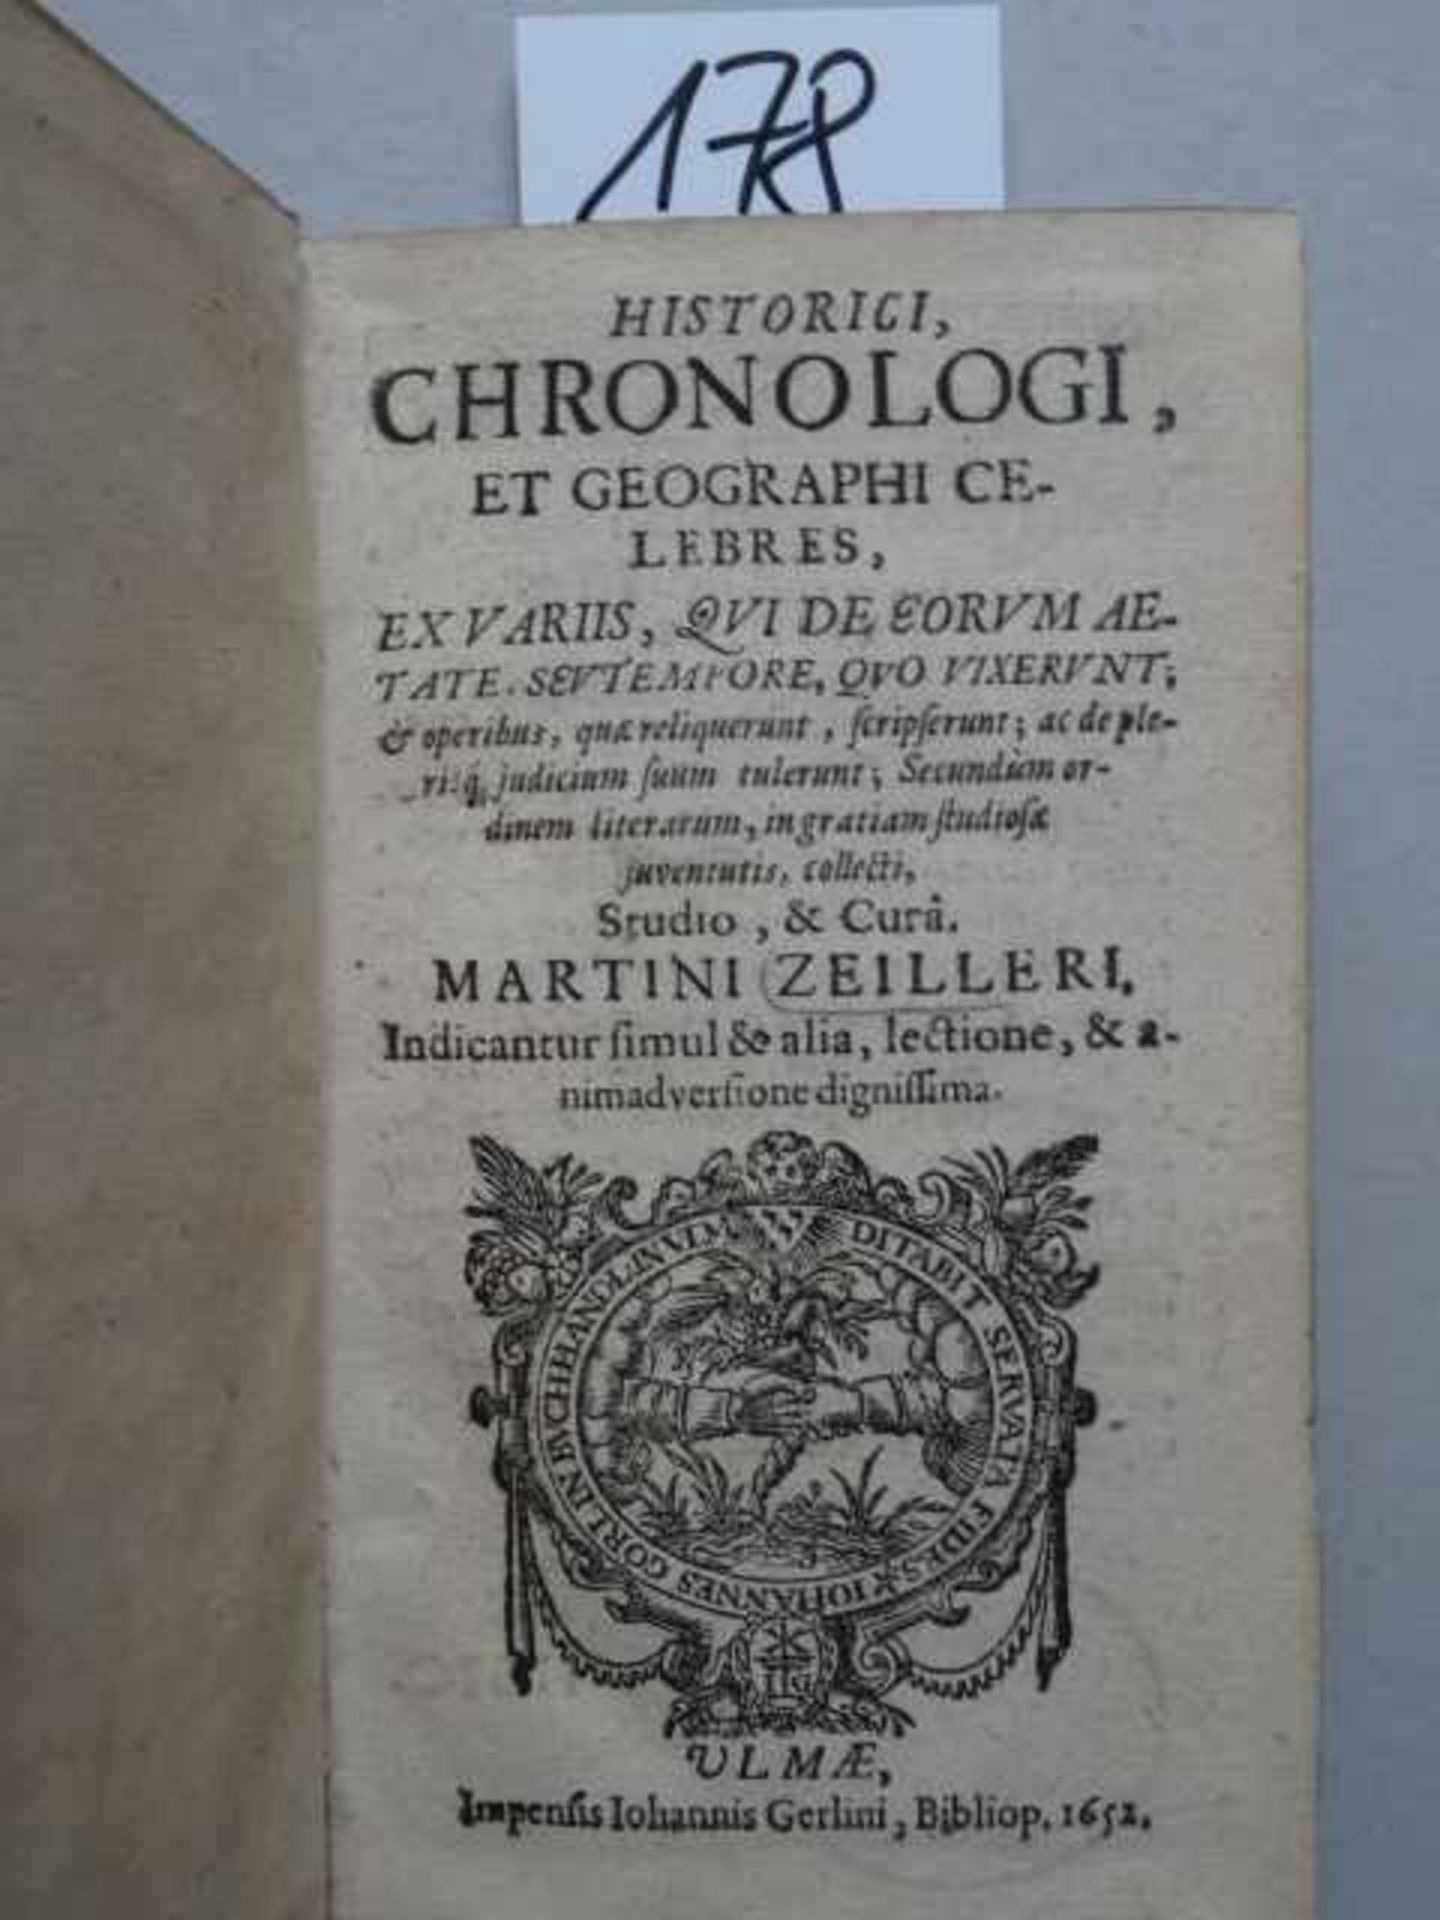 Zeiller, M. Historici, chronologi, et geographi celebres, ex variis, qui de eorum aetate, seu